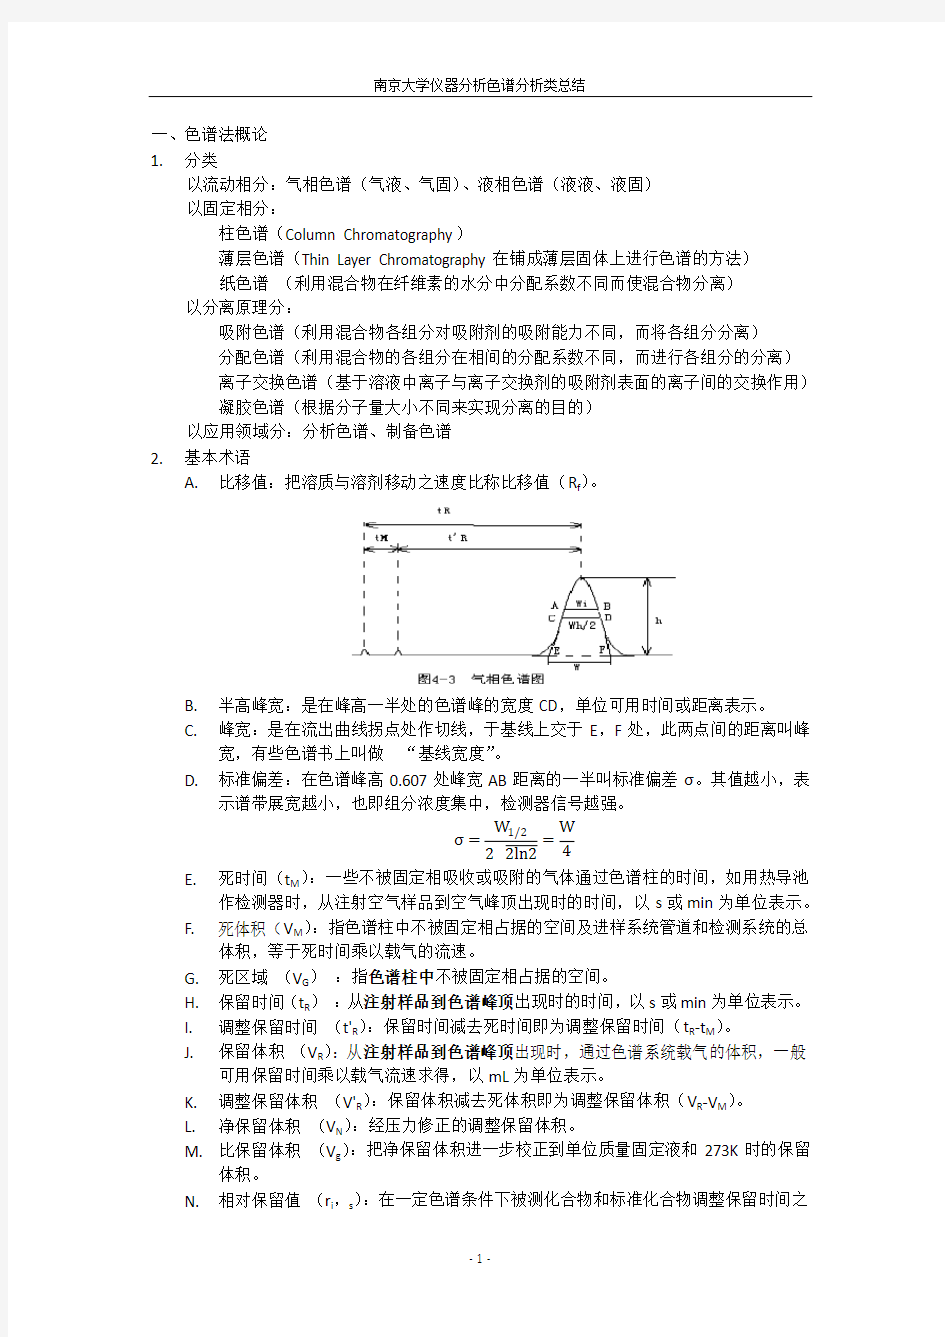 南京大学仪器分析色谱分析类总结